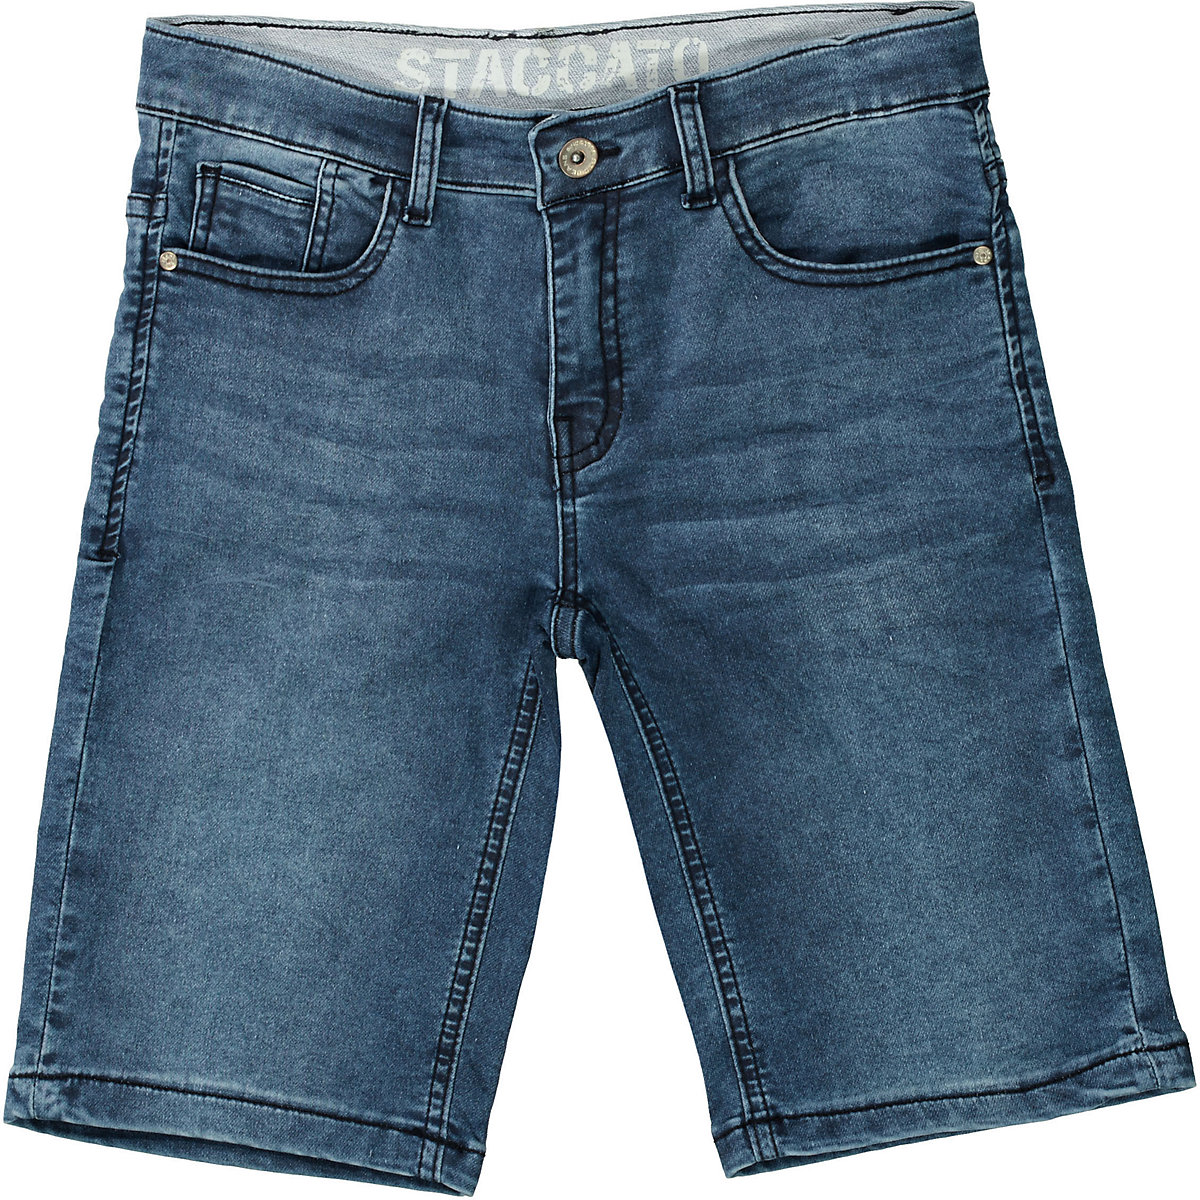 STACCATO Jeansshorts für Jungen light blue denim